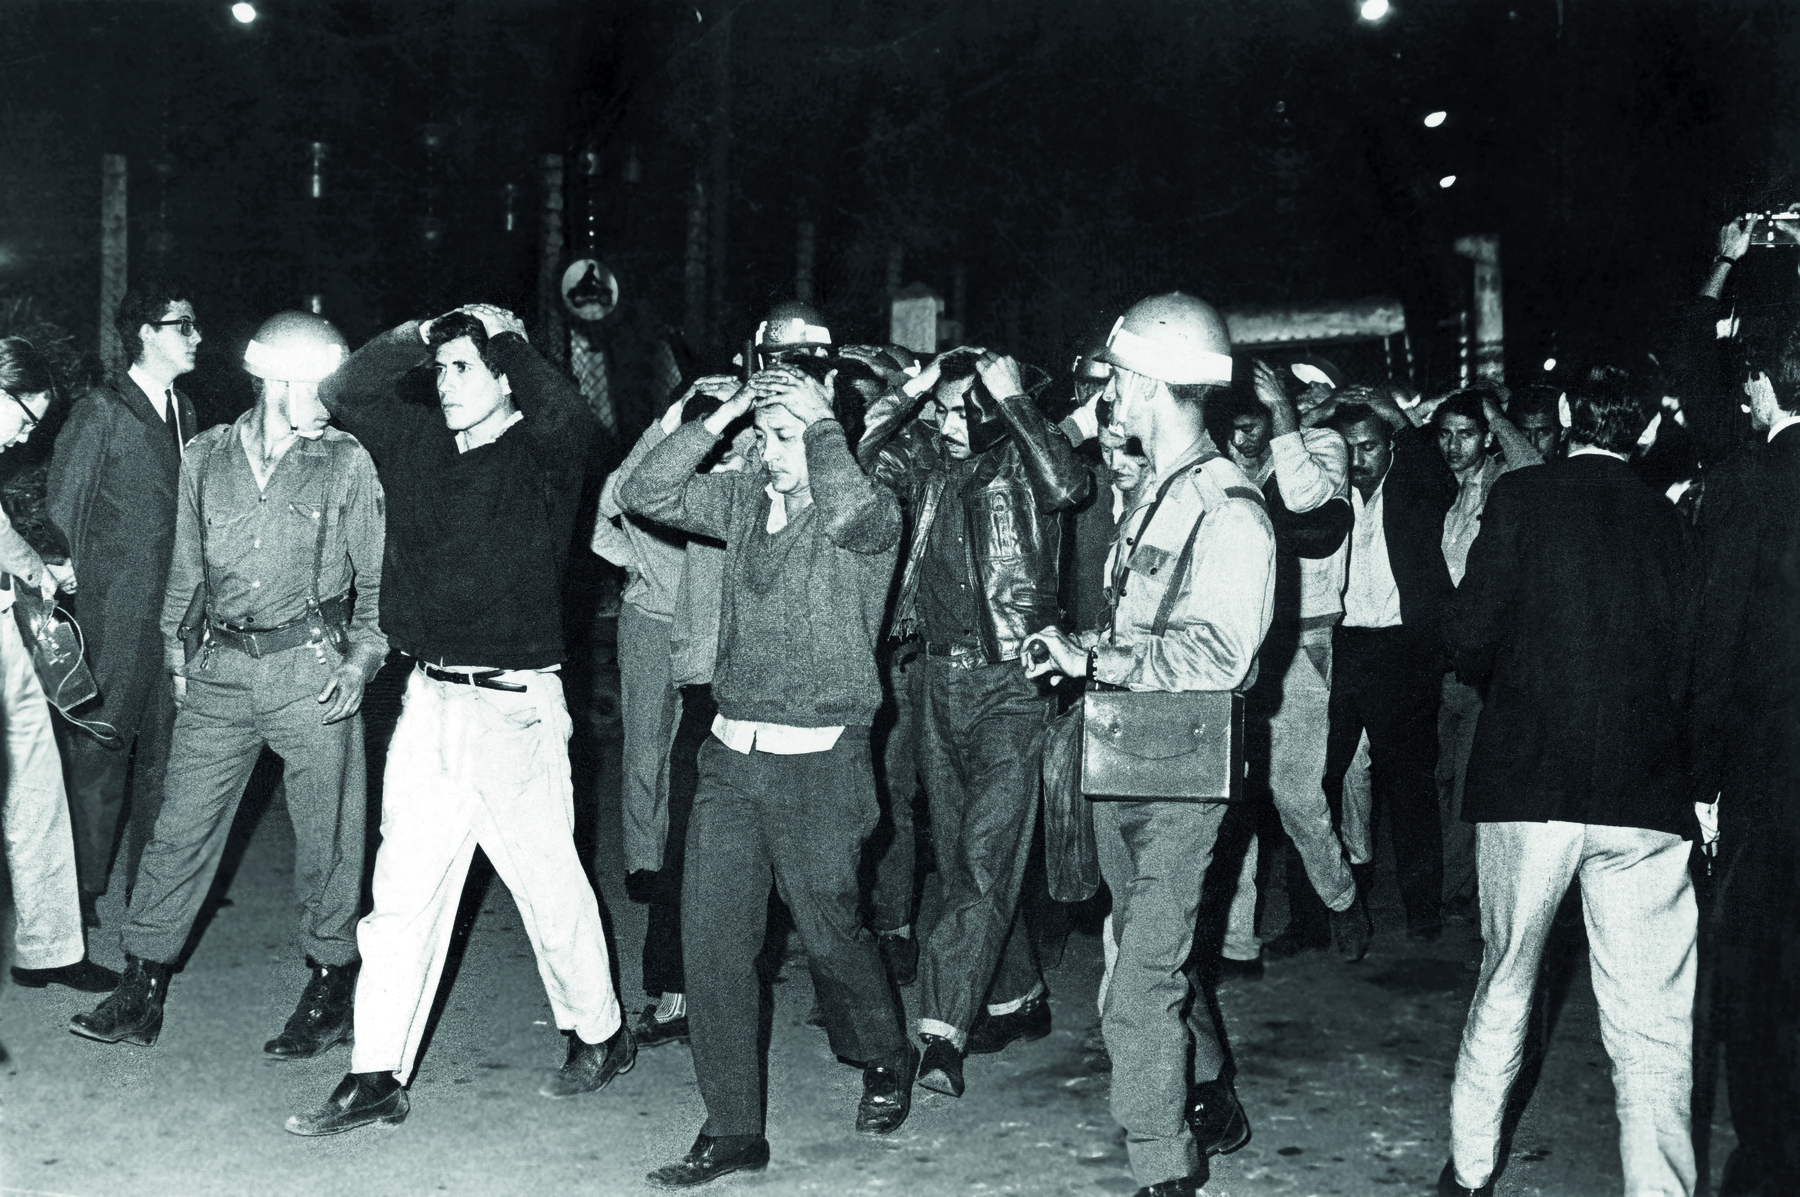 Fotografia em preto e branco. Local aberto, à noite. Em primeiro plano,  muitos homens caminham pela rua com as duas mãos sobre a cabeça, acompanhados de policiais armados. À direita, alguns homens de paletó escuro observam o movimento e fotografam as pessoas.